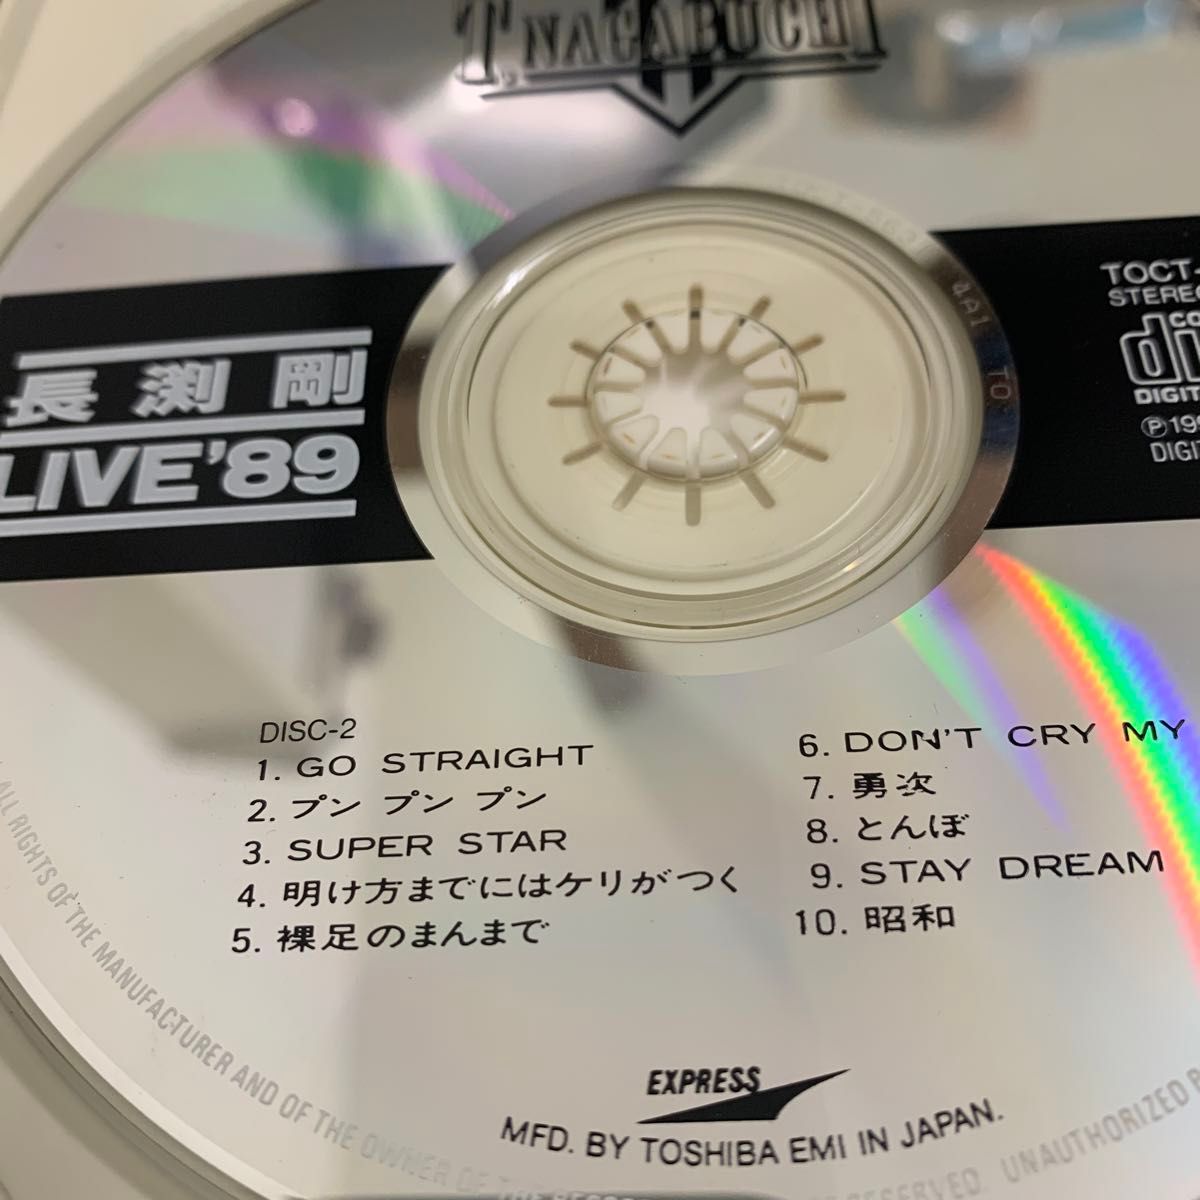 長渕　剛　LIVE CD  西武球場　LIVE89 2セットCD4枚